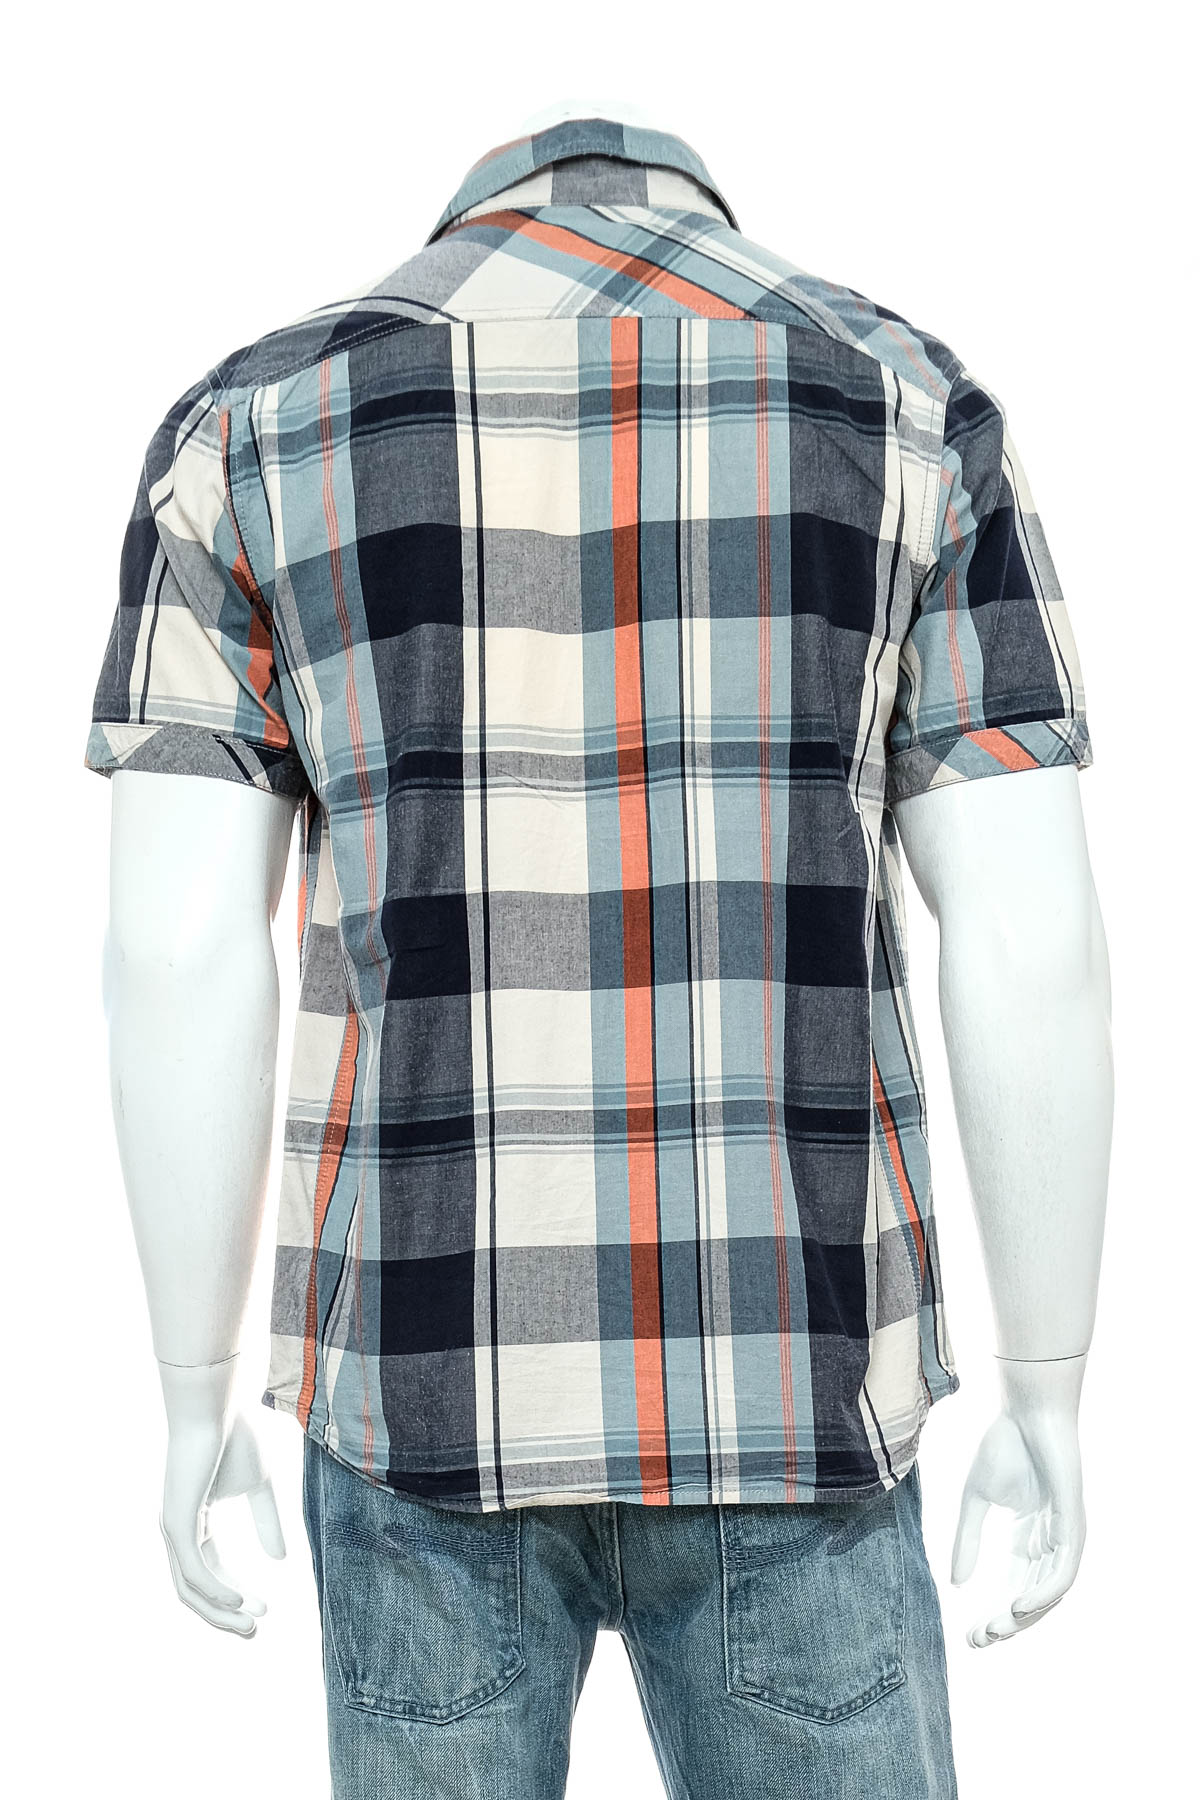 Men's shirt - Cedar Wood State - 1